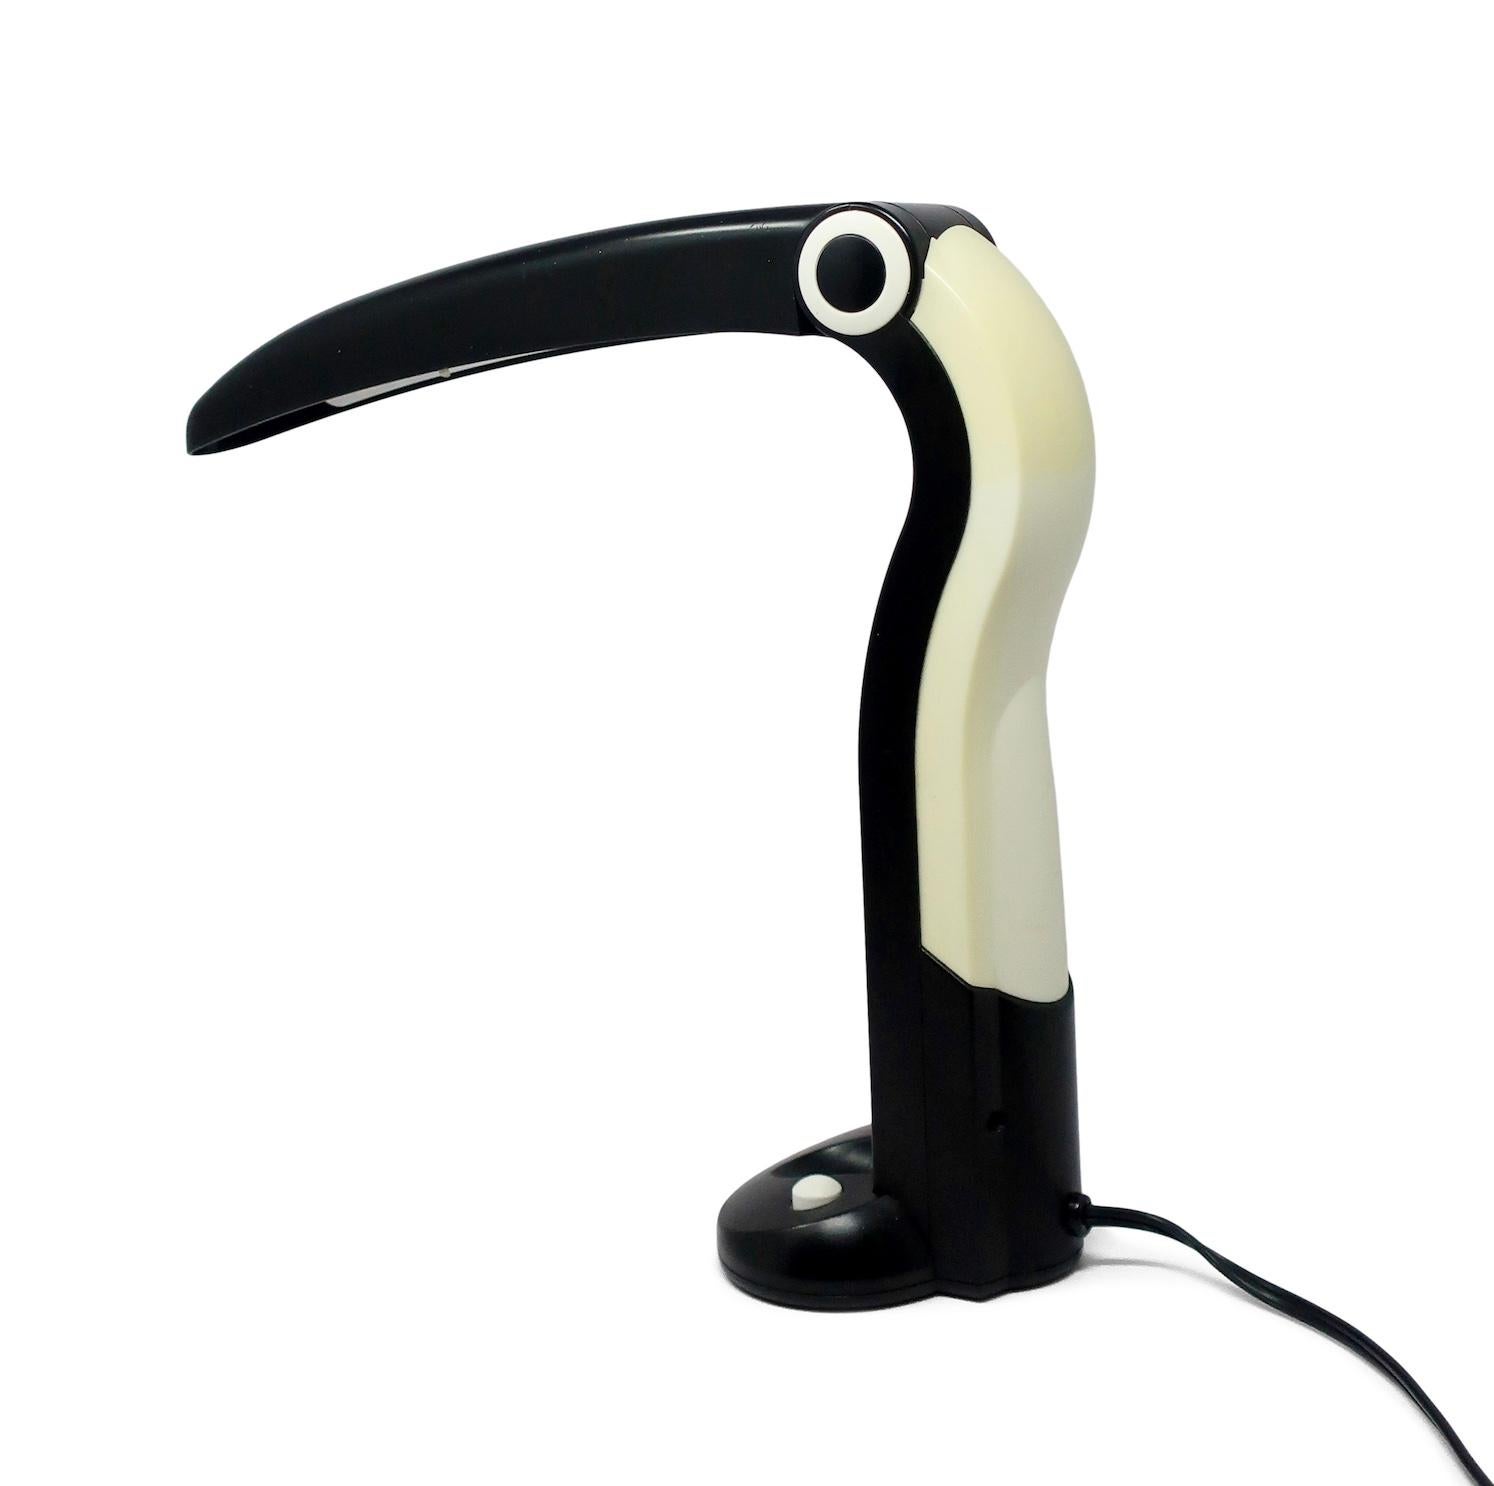 Une excellente lampe de bureau pliante postmoderne blanche et noire en forme de toucan.  D'un charme infini, elle fonctionne avec une seule ampoule fluorescente et dispose d'un interrupteur marche/arrêt à la base.

En bon état vintage, avec des